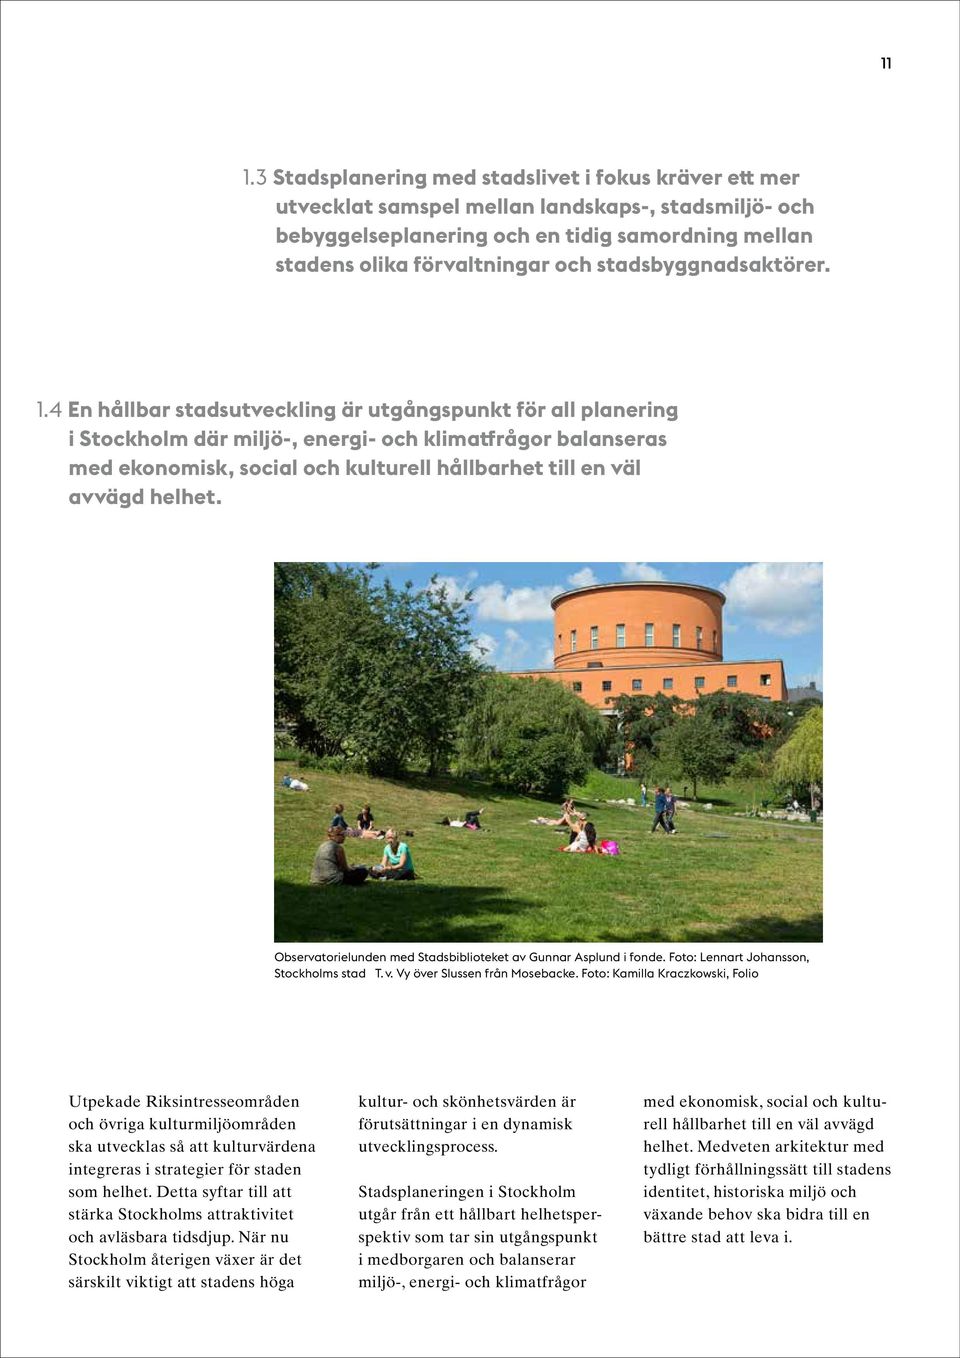 4 En hållbar stadsutveckling är utgångspunkt för all planering i Stockholm där miljö-, energi- och klimatfrågor balanseras med ekonomisk, social och kulturell hållbarhet till en väl avvägd helhet.